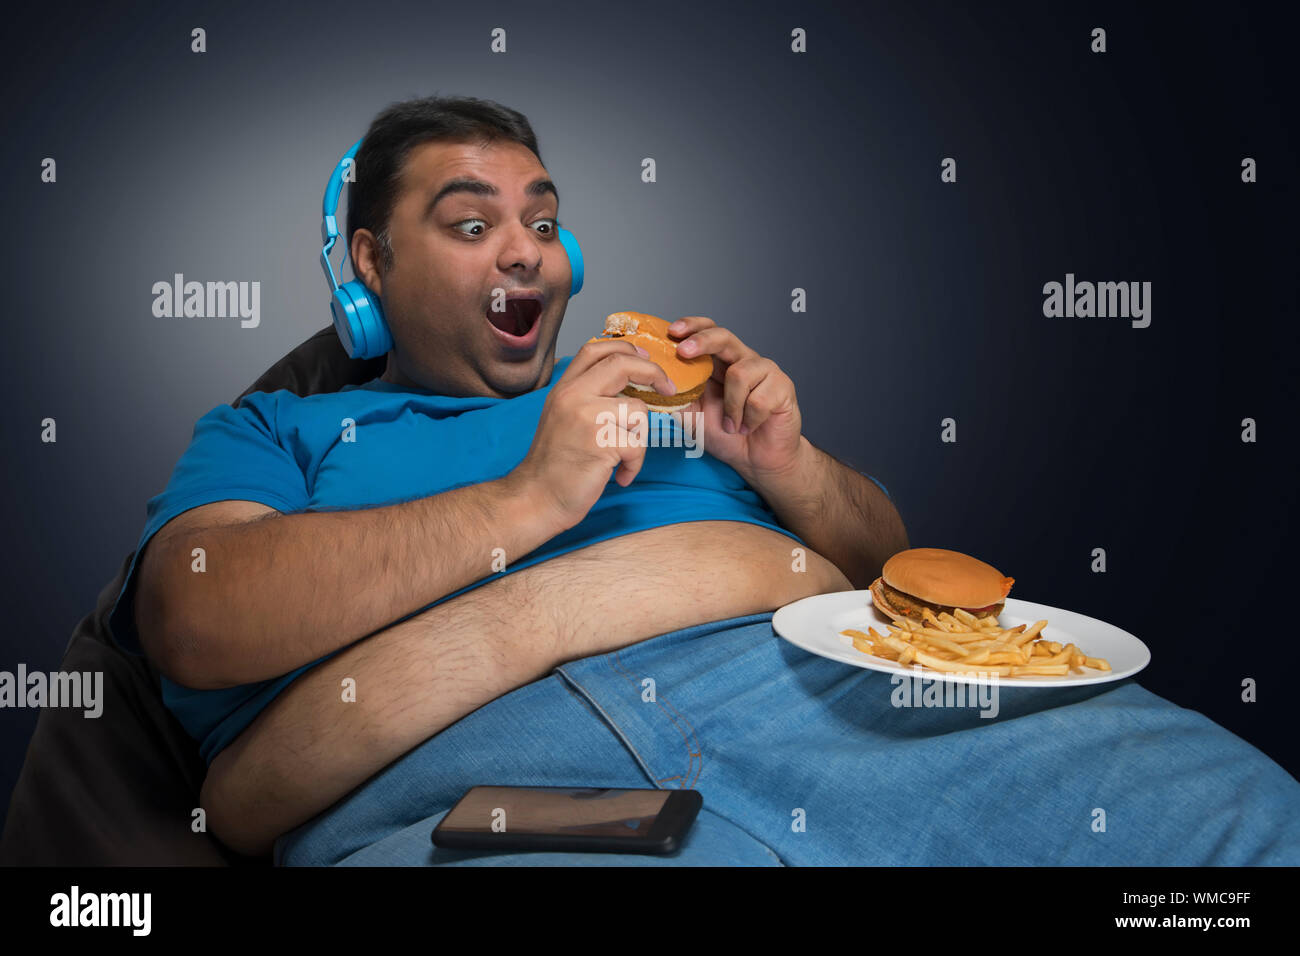 L'homme obèse excité avec ventre visible hors de sa chemise manger burger tout en écoutant de la musique avec une assiette de hamburger et frites sur sa cuisse Banque D'Images